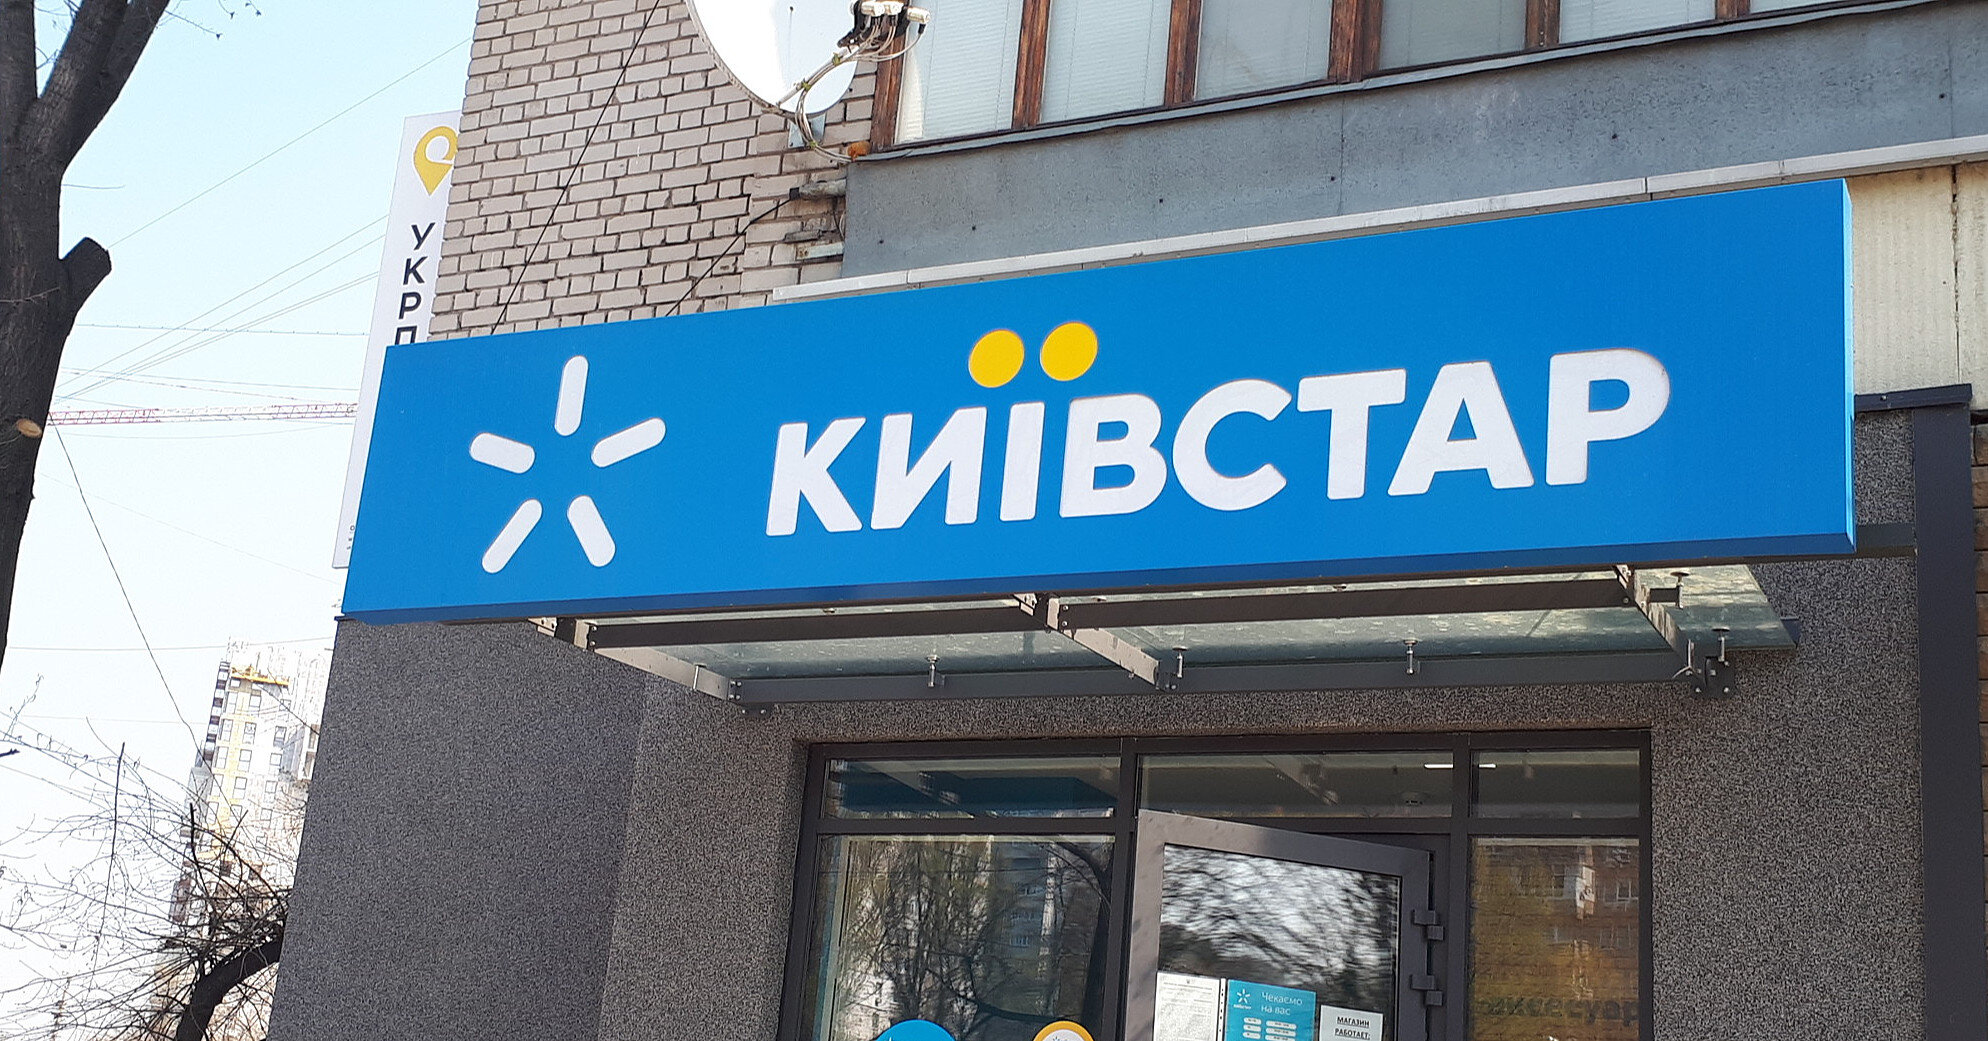 “Київстар” сьогодні почне відновлювати мобільний інтернет – президент компанії